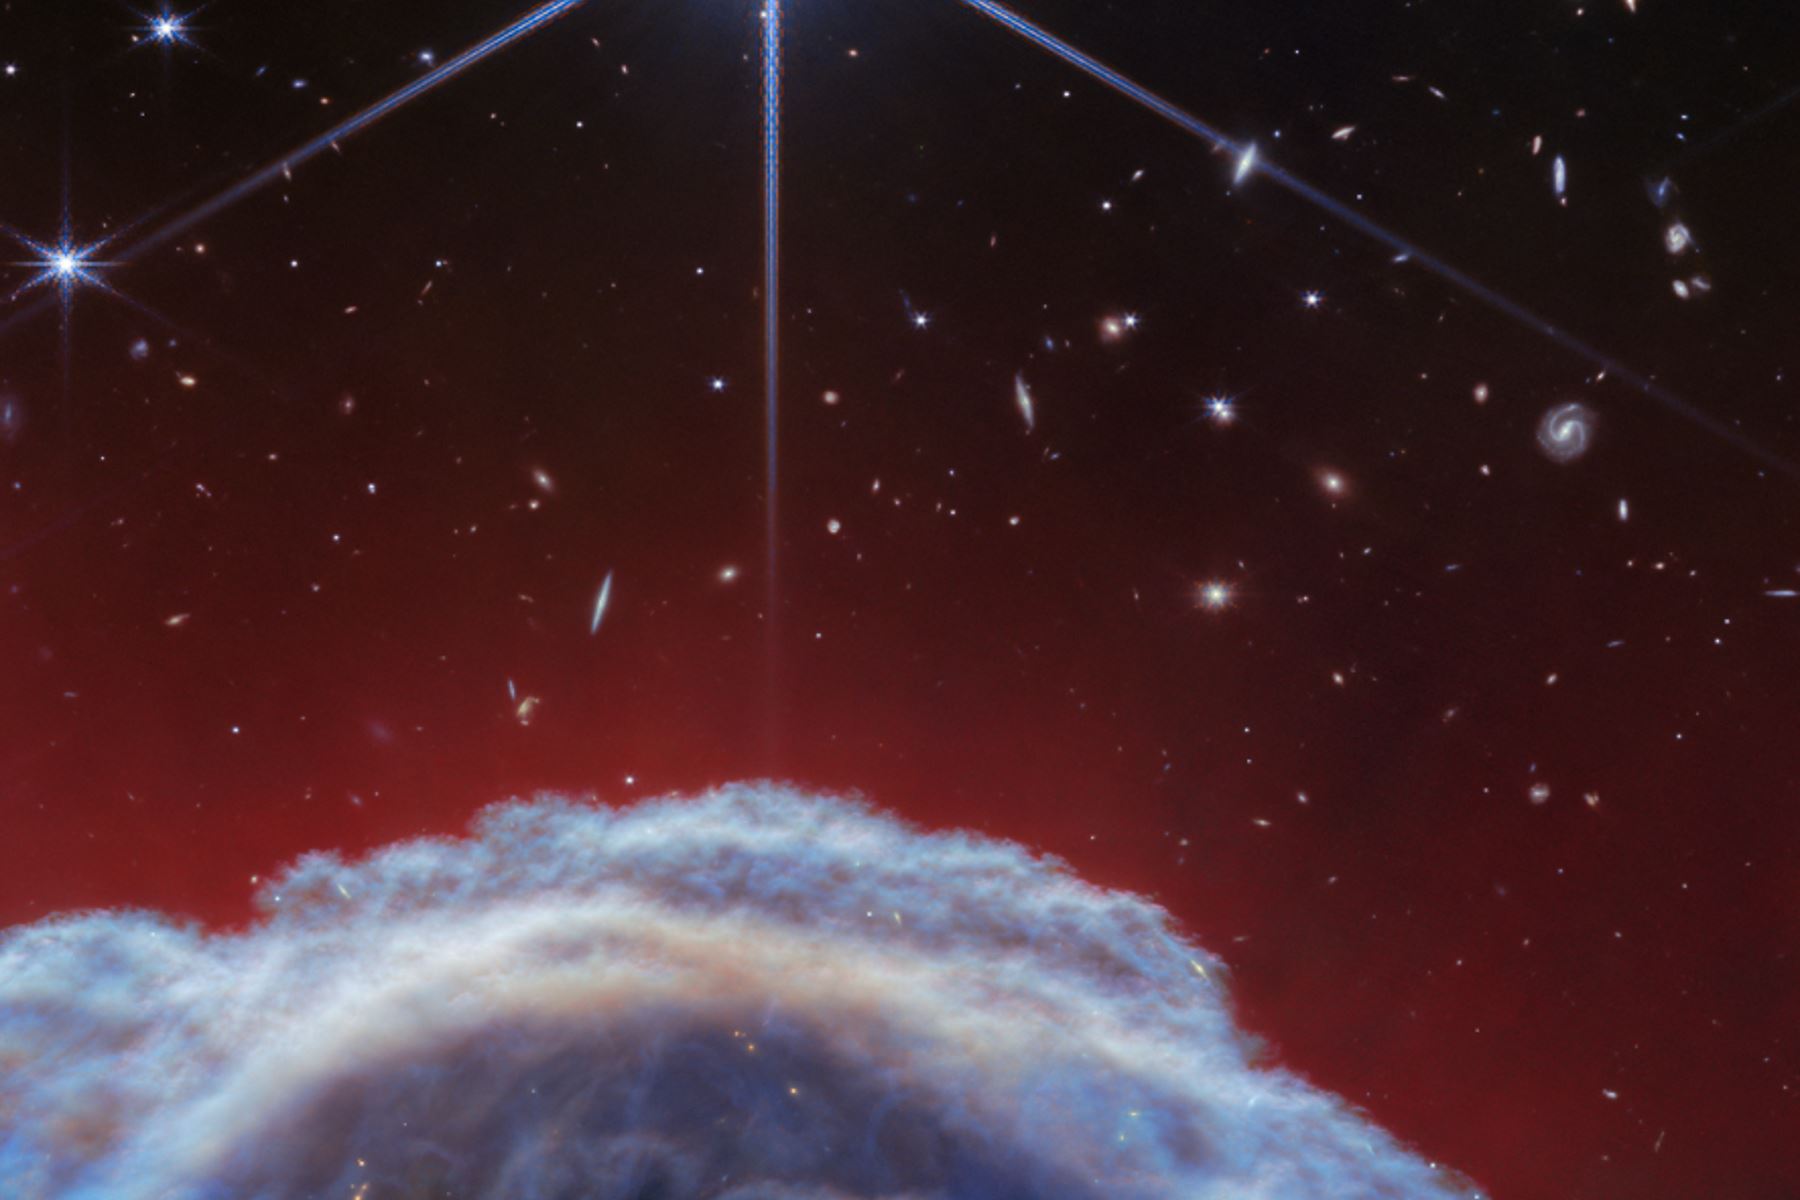 Los astrónomos pretenden estudiar los datos espectroscópicos obtenidos para obtener información sobre la evolución de las propiedades físicas y químicas del material observado a través de la nebulosa.